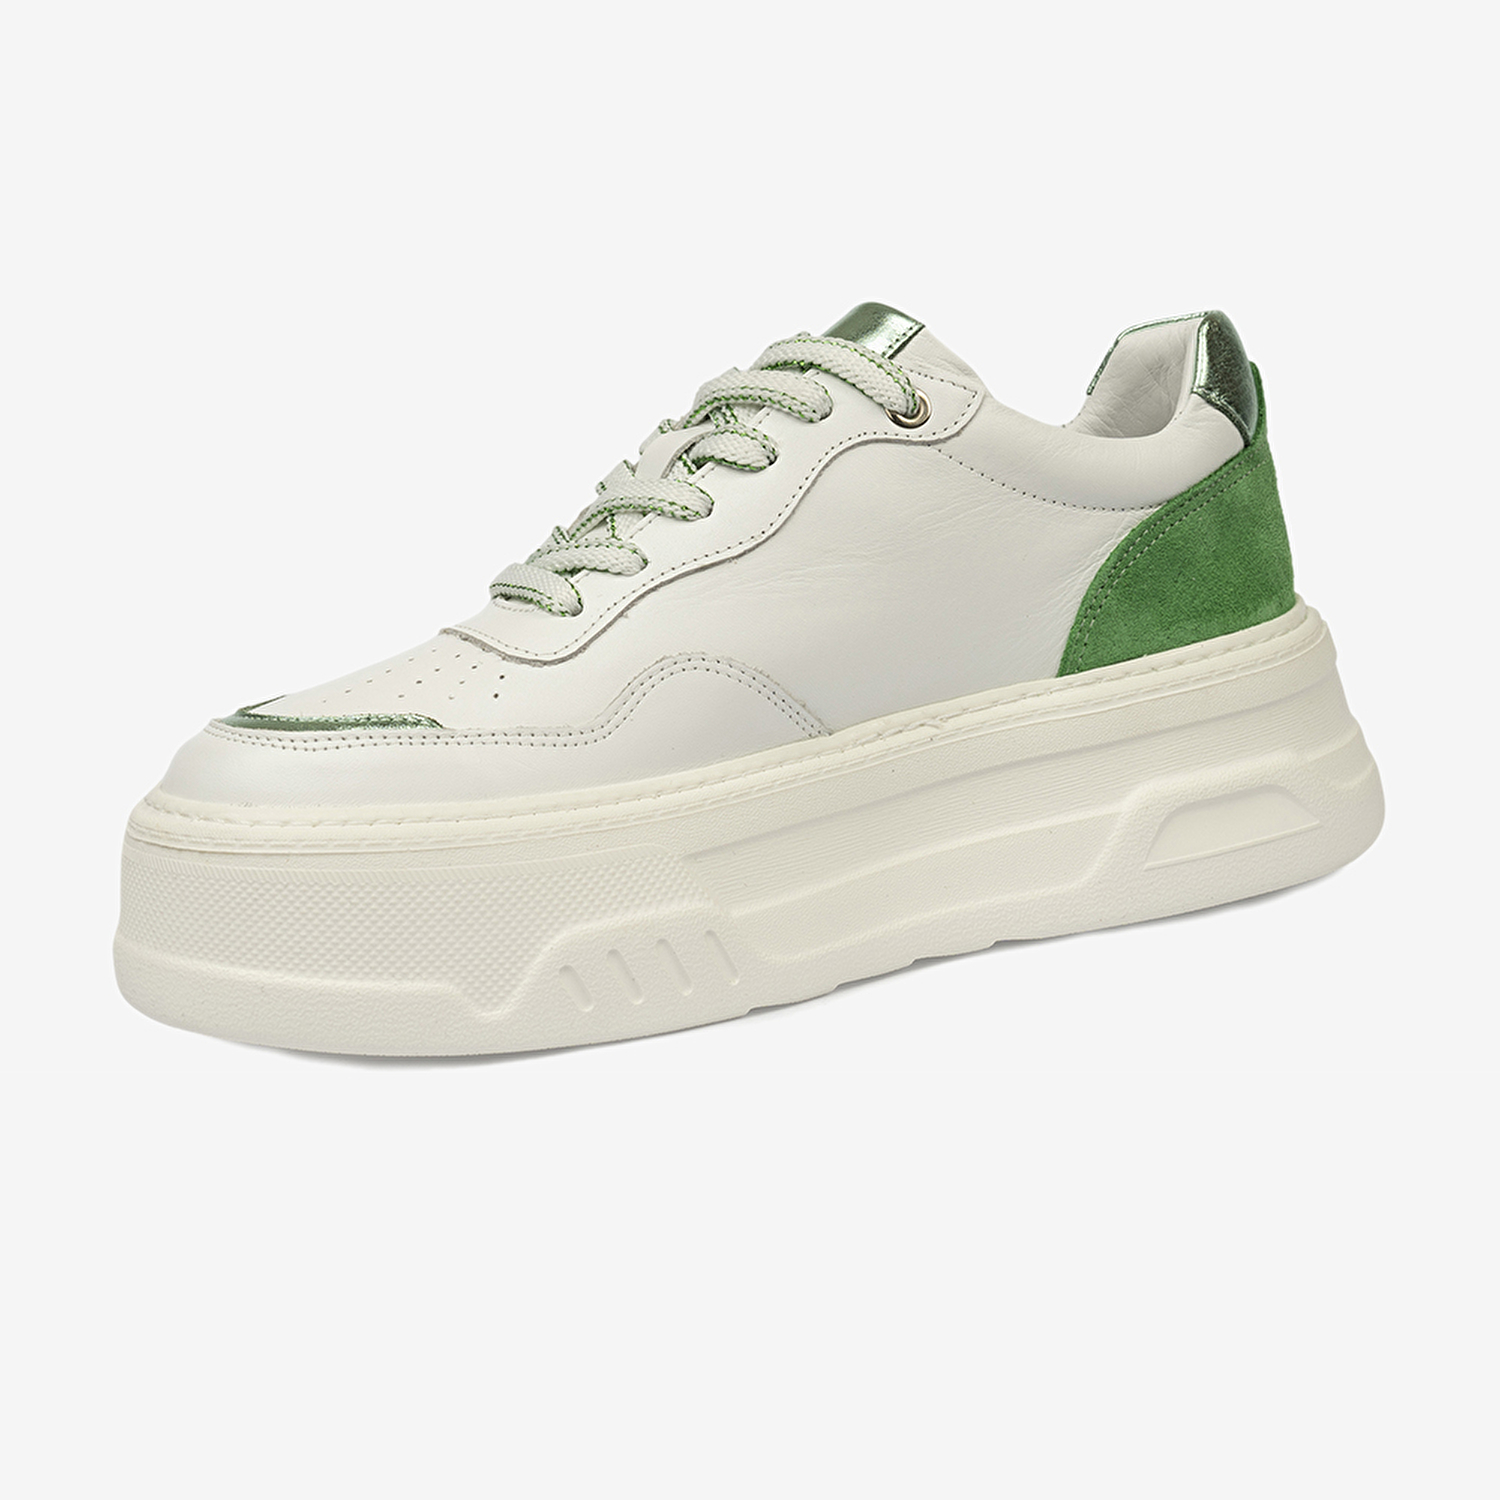 Kadın Beyaz Yeşil Hakiki Deri Sneaker Ayakkabı 4Y2SA59041-3